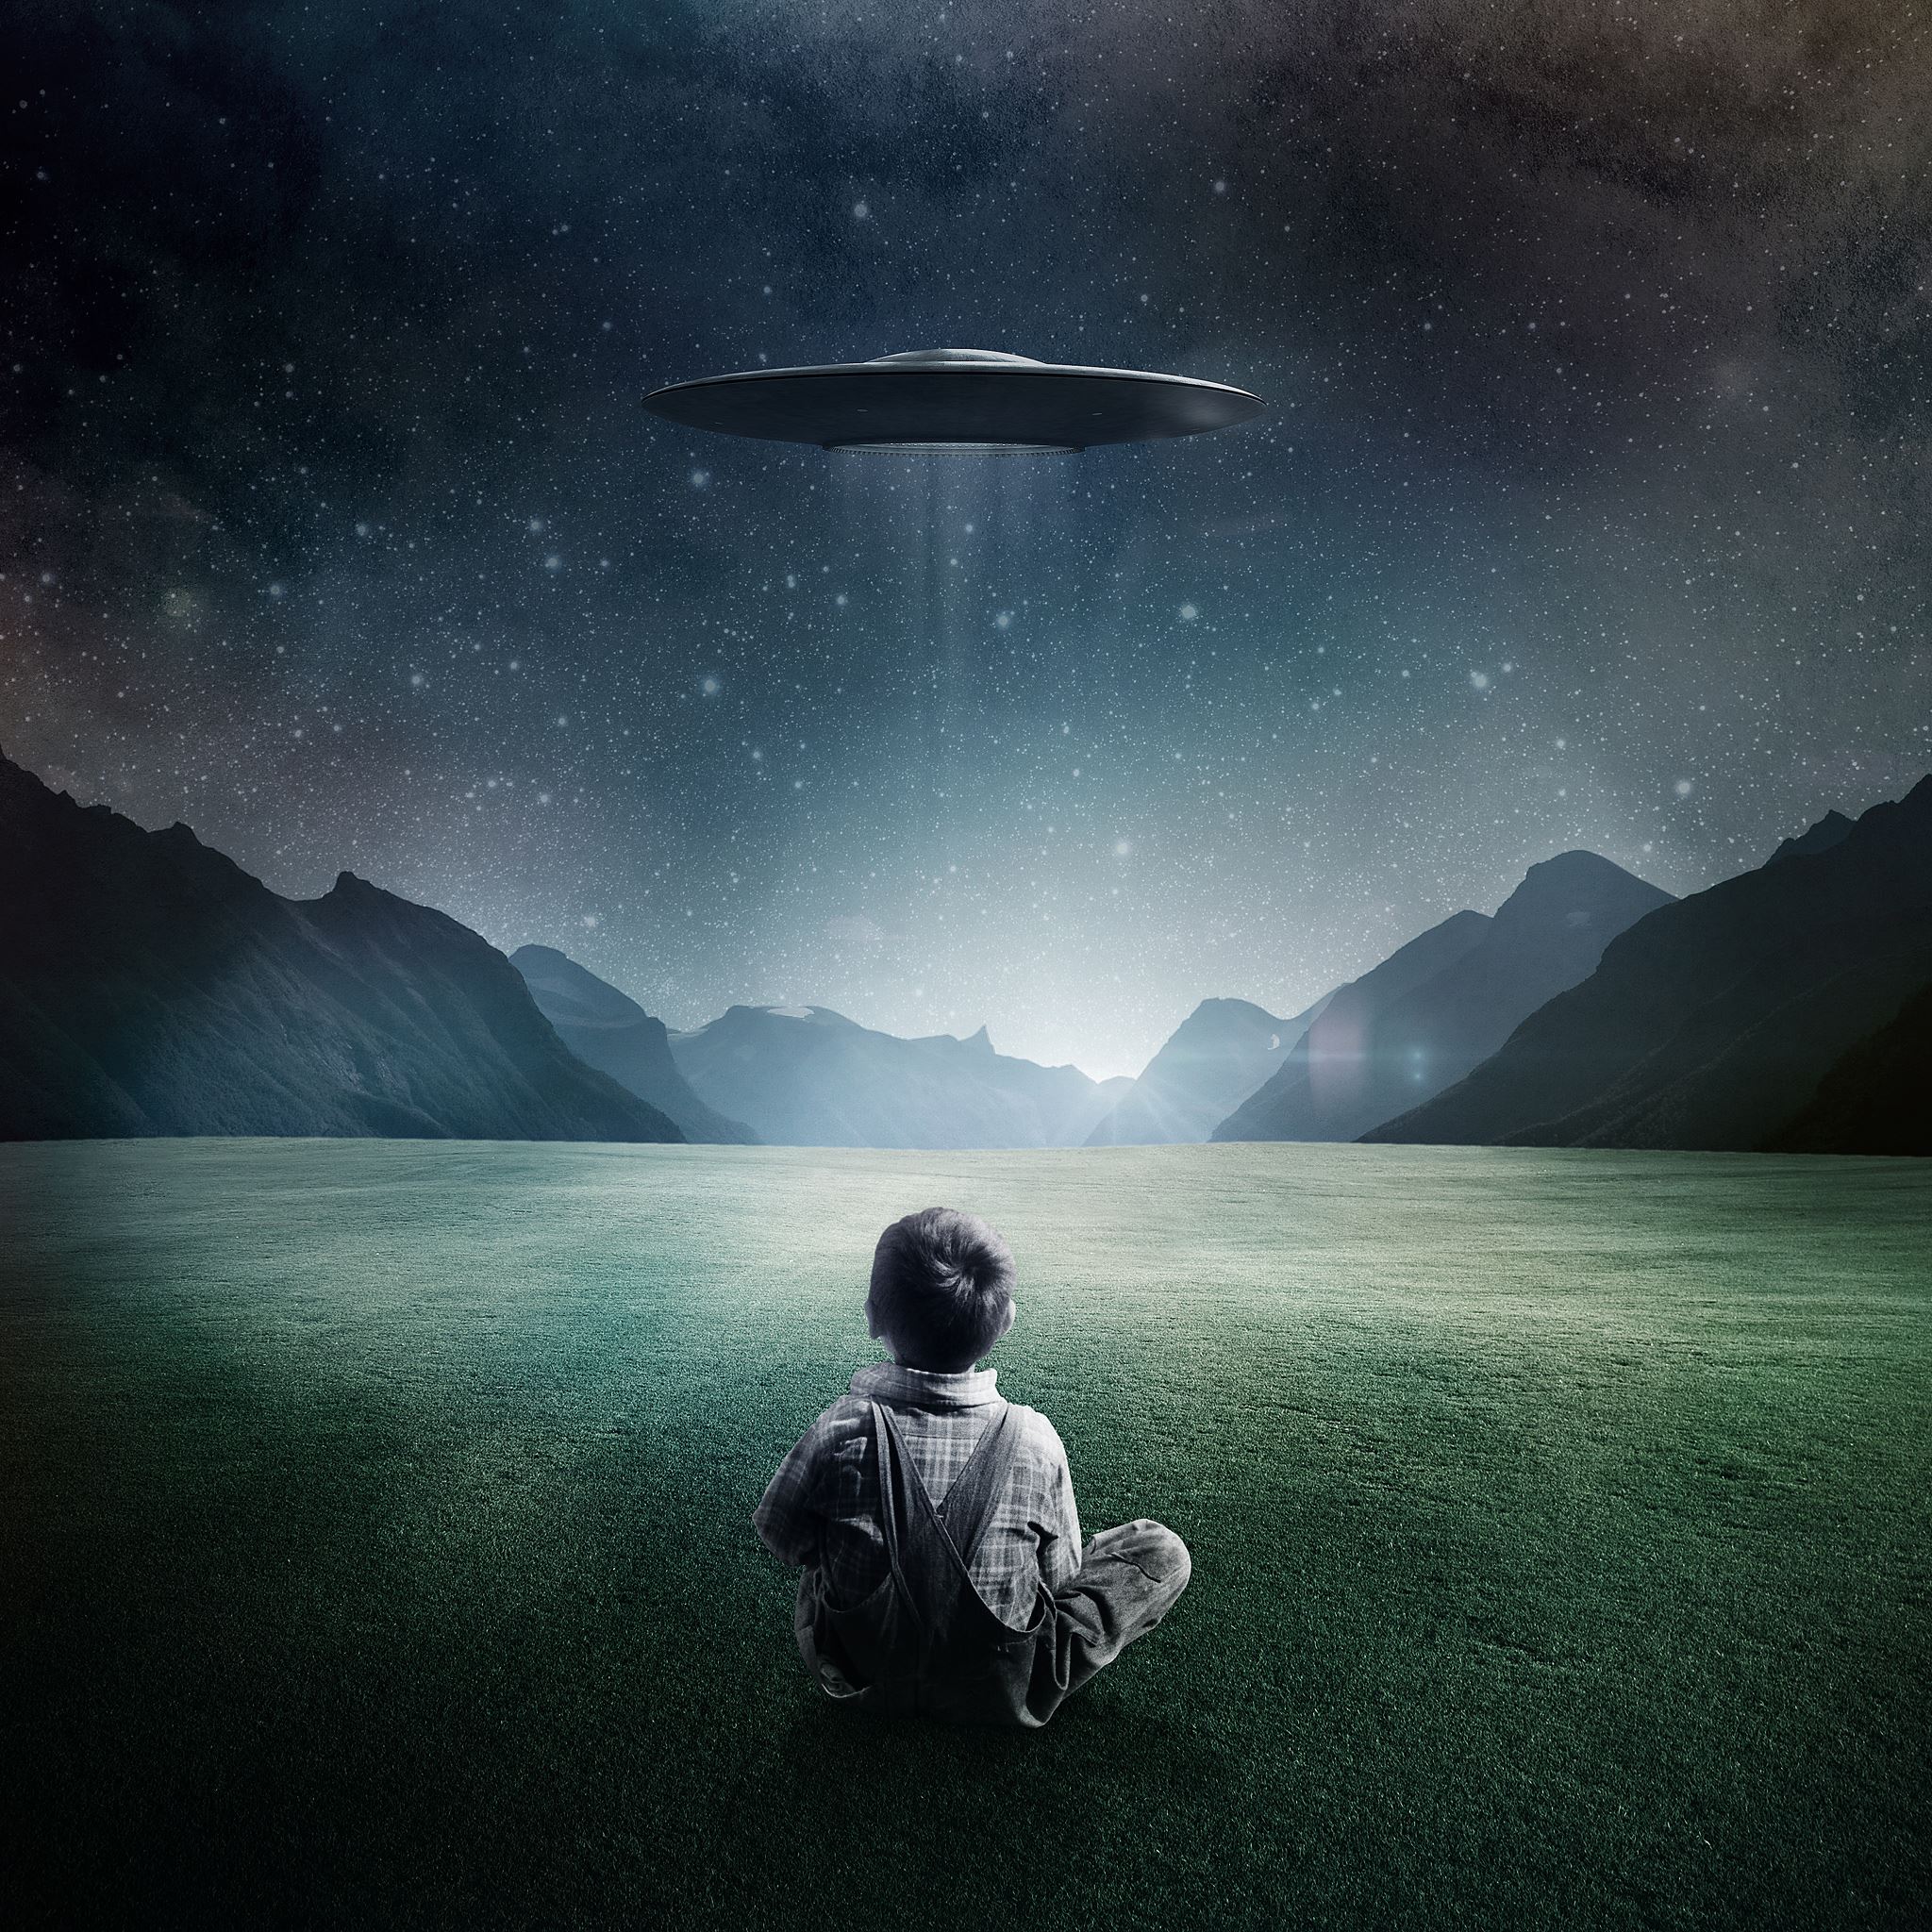 Boy and UFO iPad Air wallpaper 